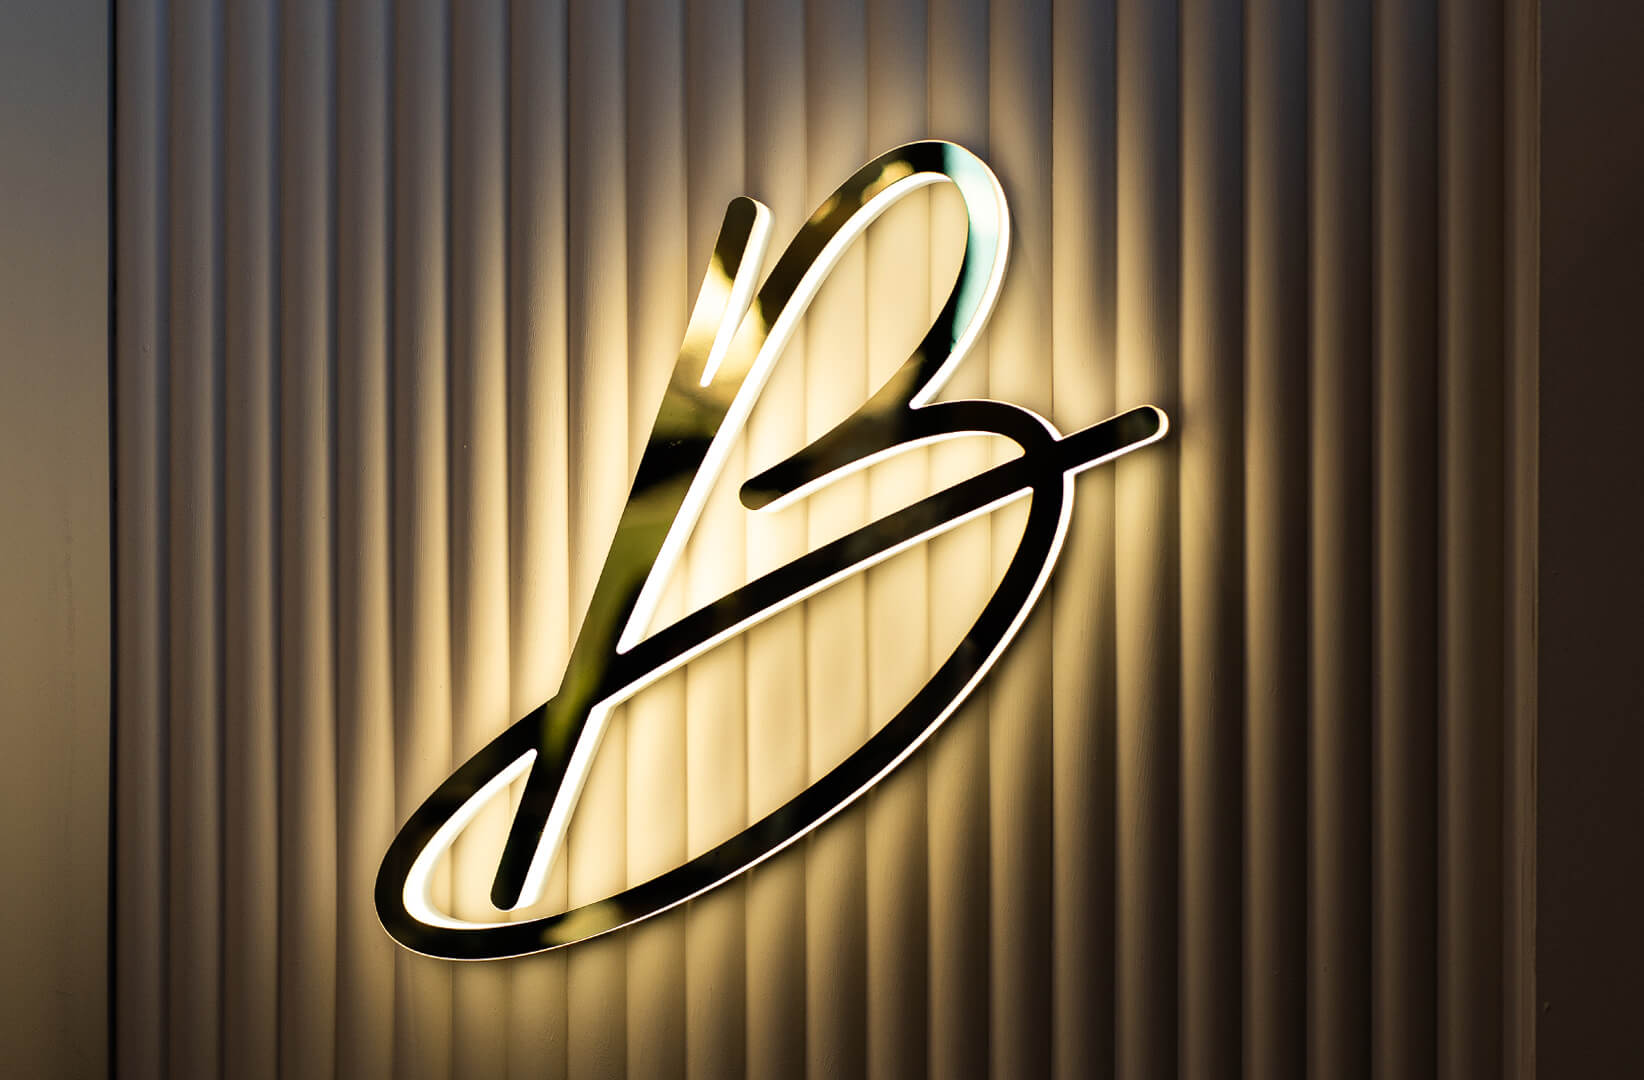 Blushington Letter B - Letter B met Blushington logo in goud, verlicht langs de LED omlijning